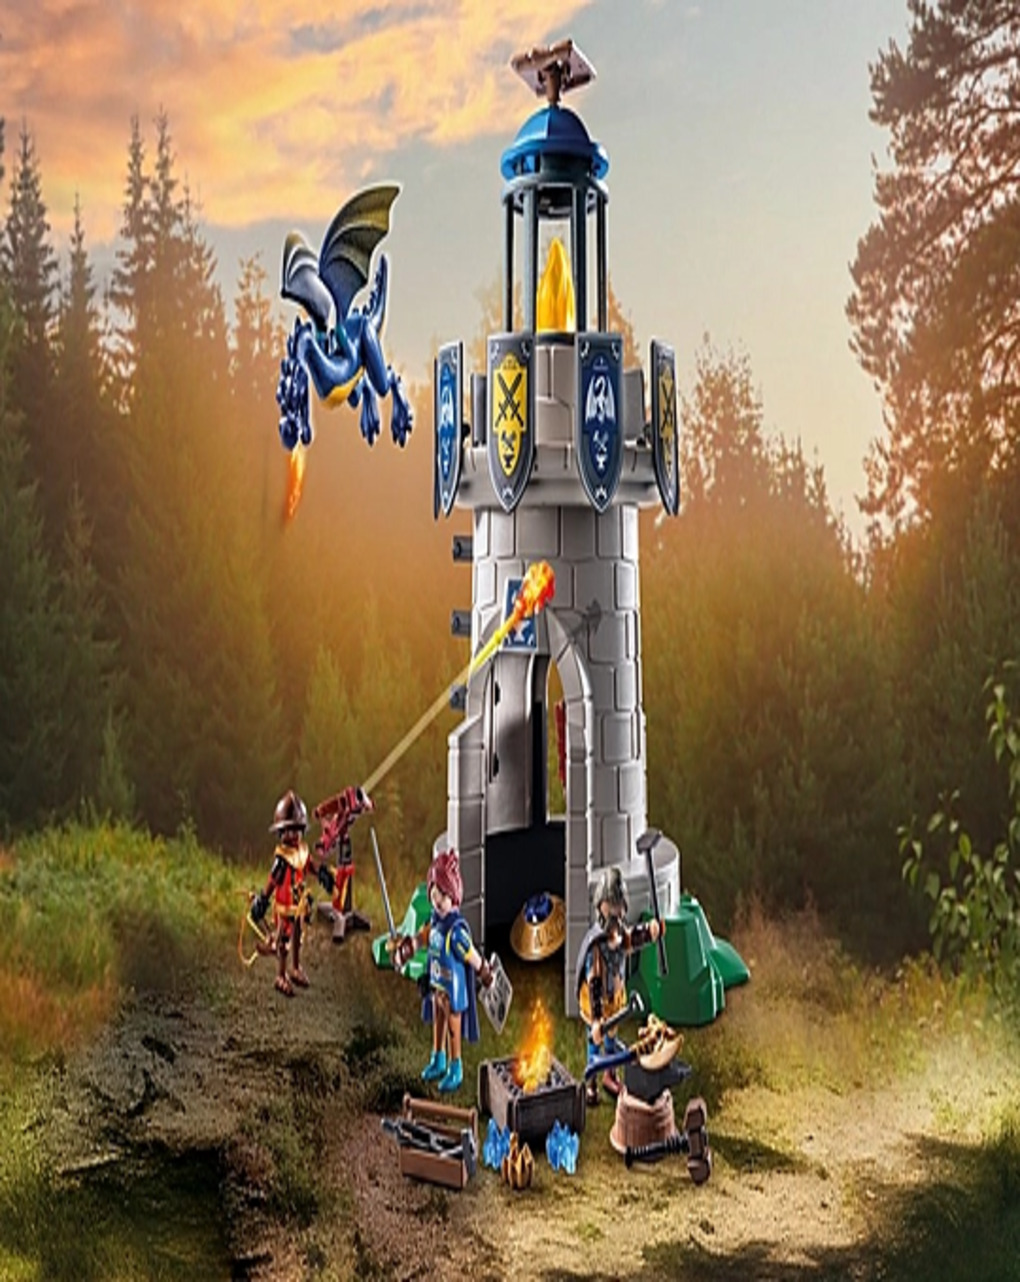 Playmobil πύργος ιπποτών με δράκο και σιδηρουργό 71483 - Playmobil